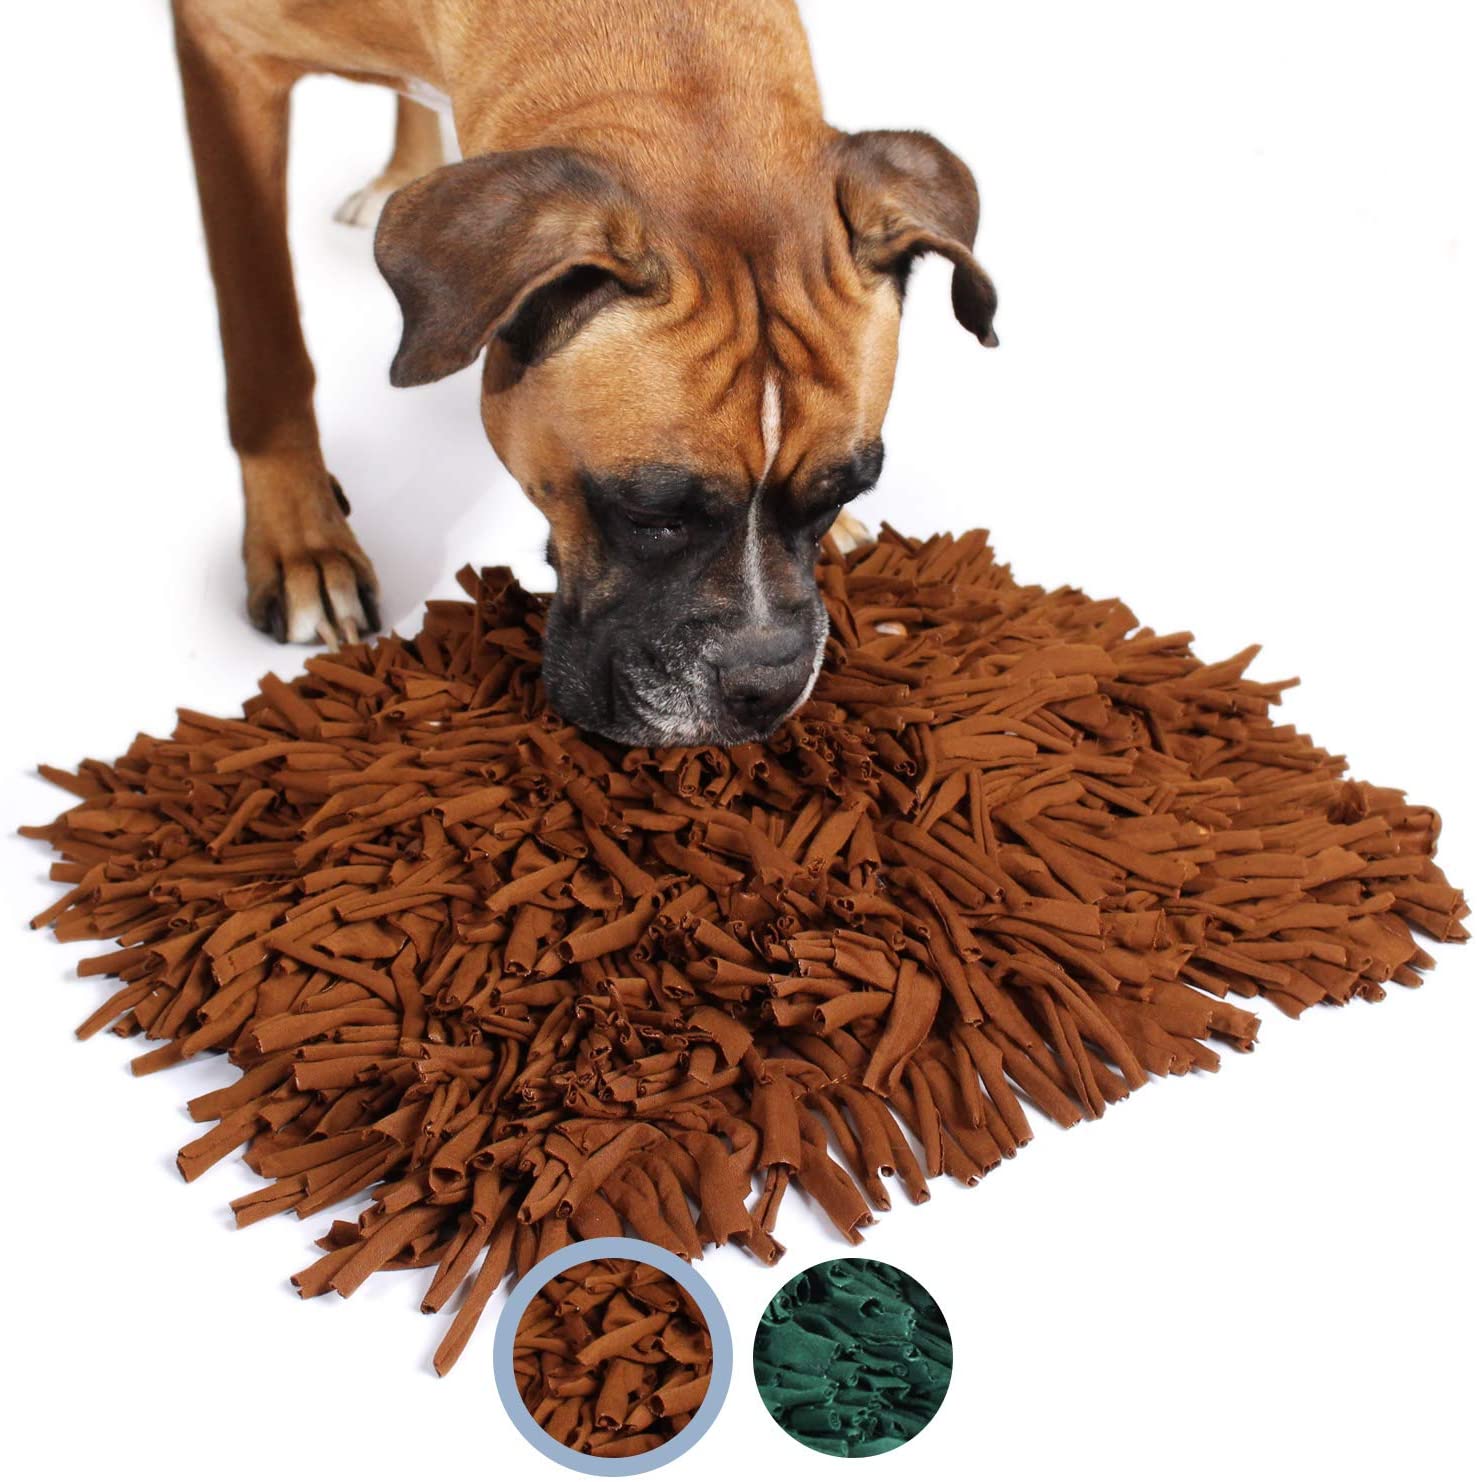  Bella & Balu Alfombra olfativa para perros (45 x 30 cm) | Juguete interactivo para mascotas que promueve la búsqueda de alimentos y estimula el olfato del perro (Marrón) 